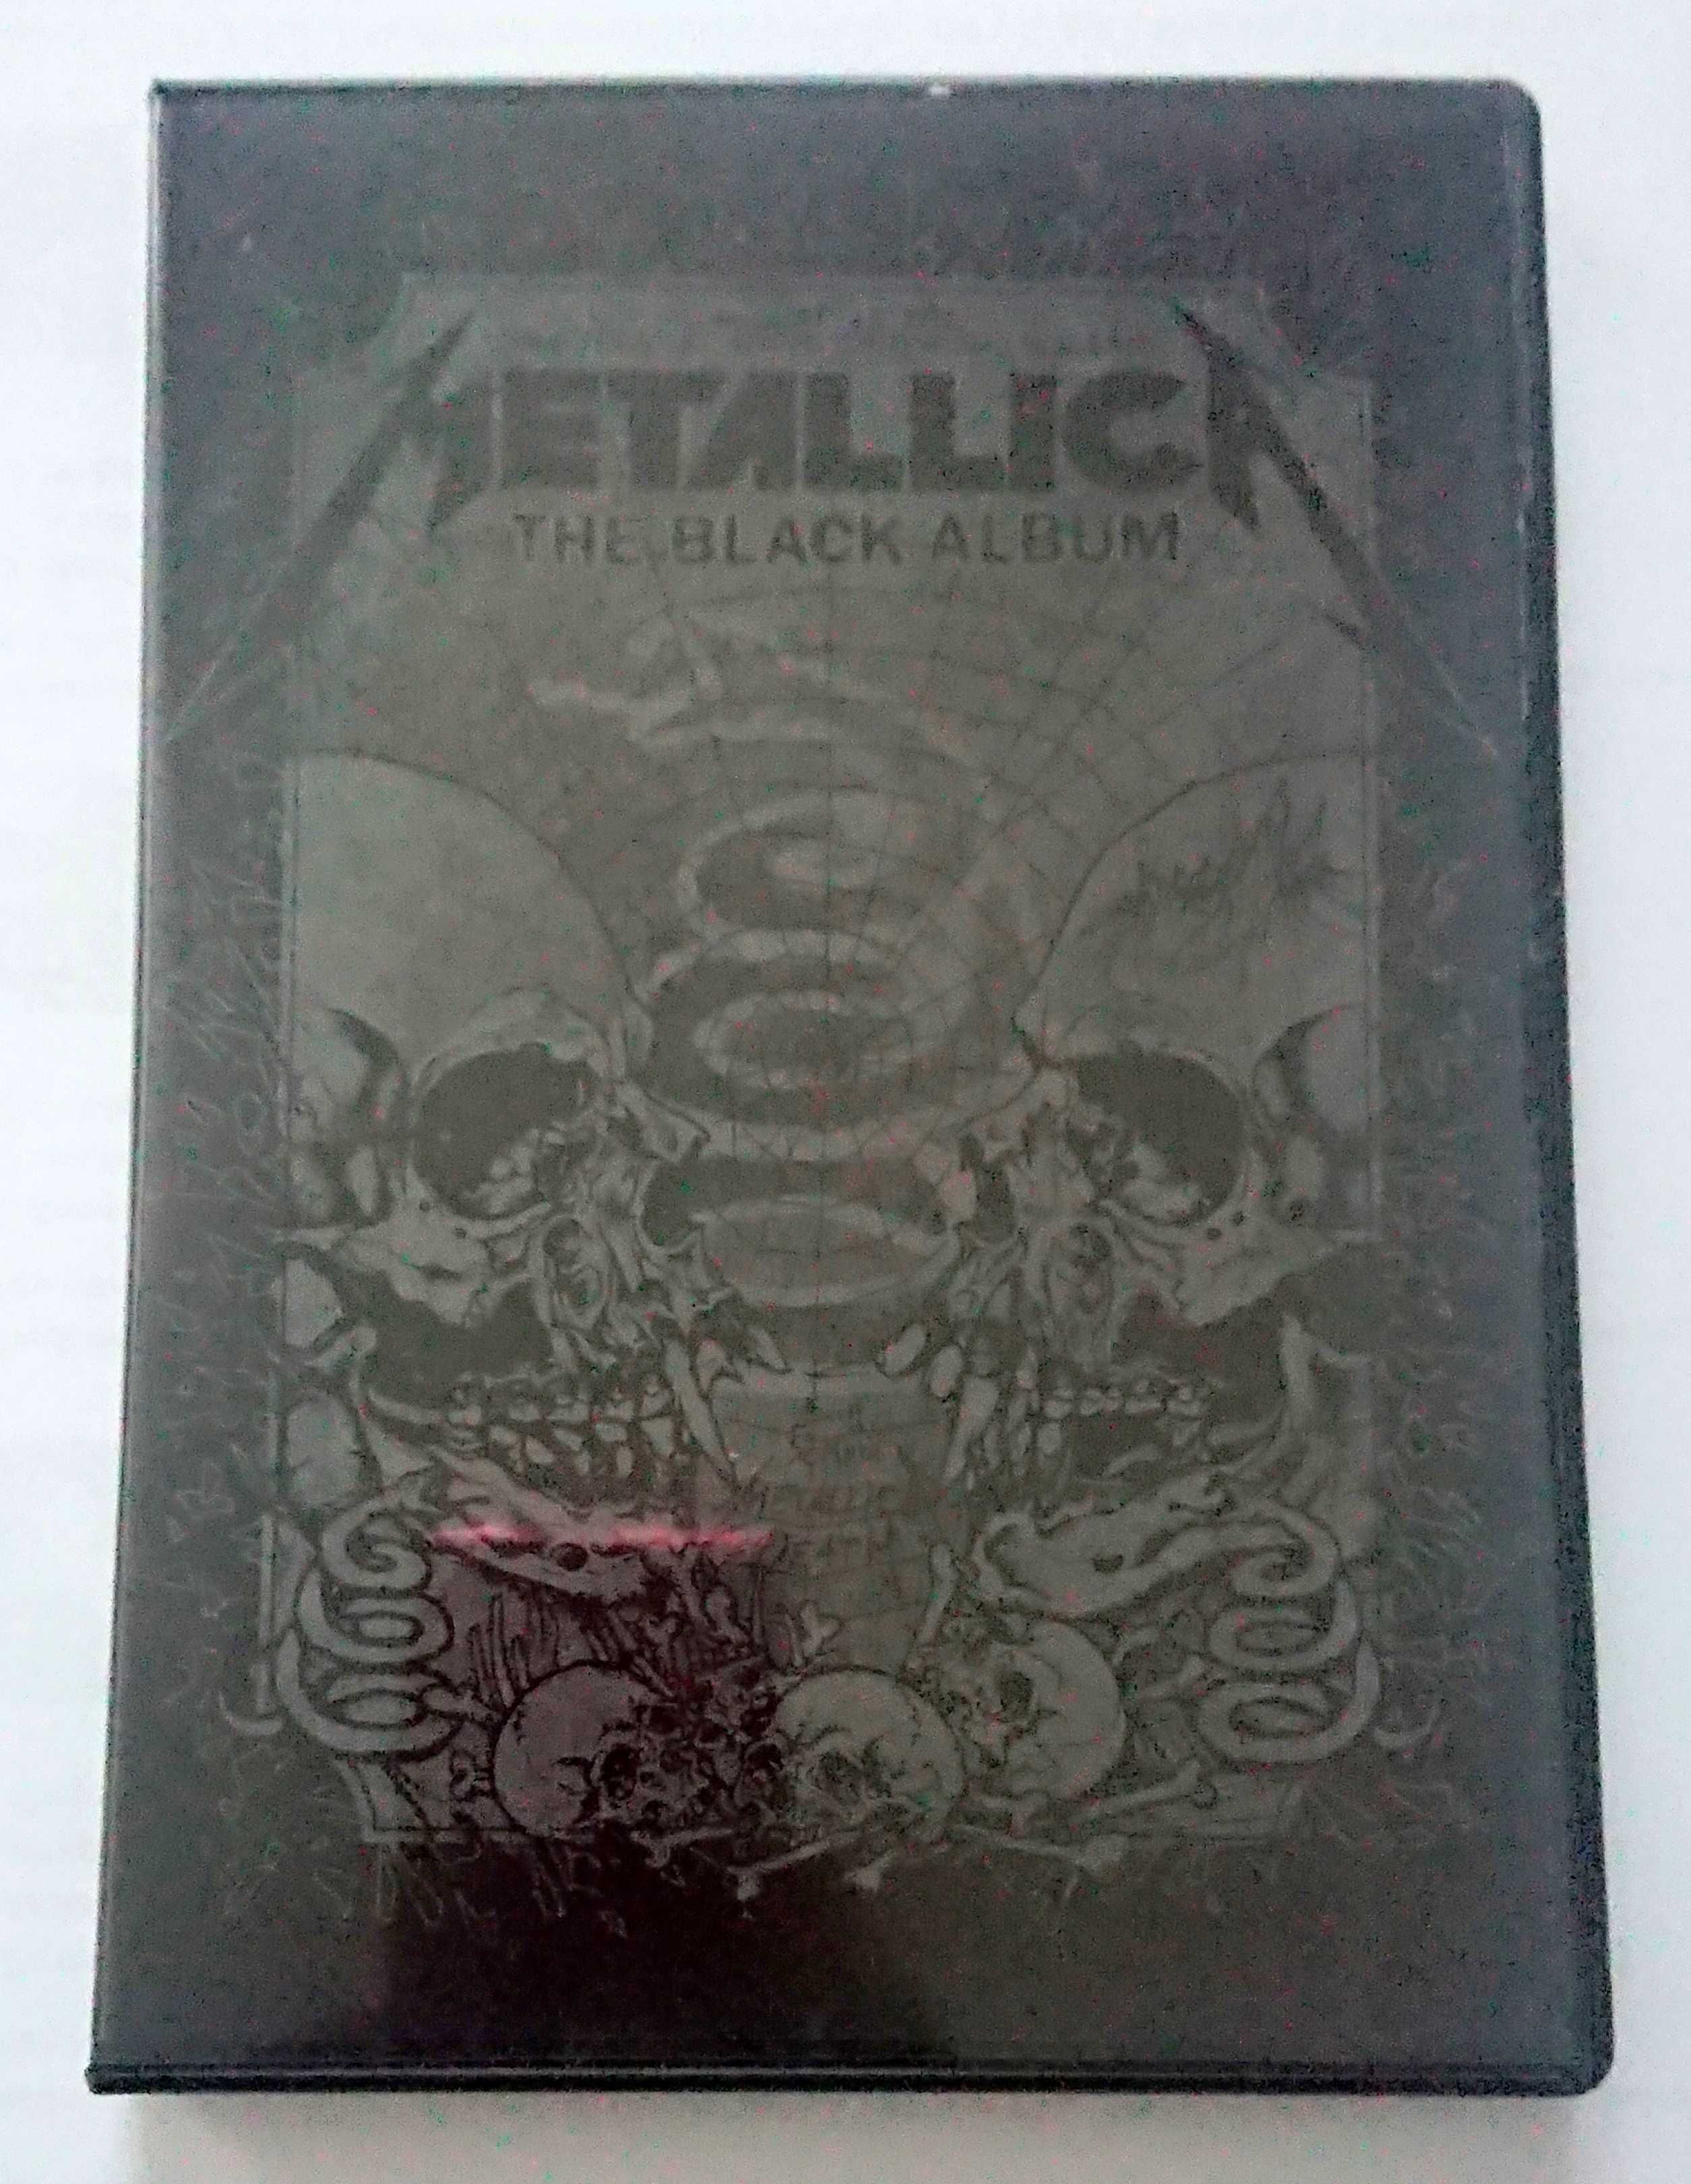 Metallica Chorzów 1991 DVD